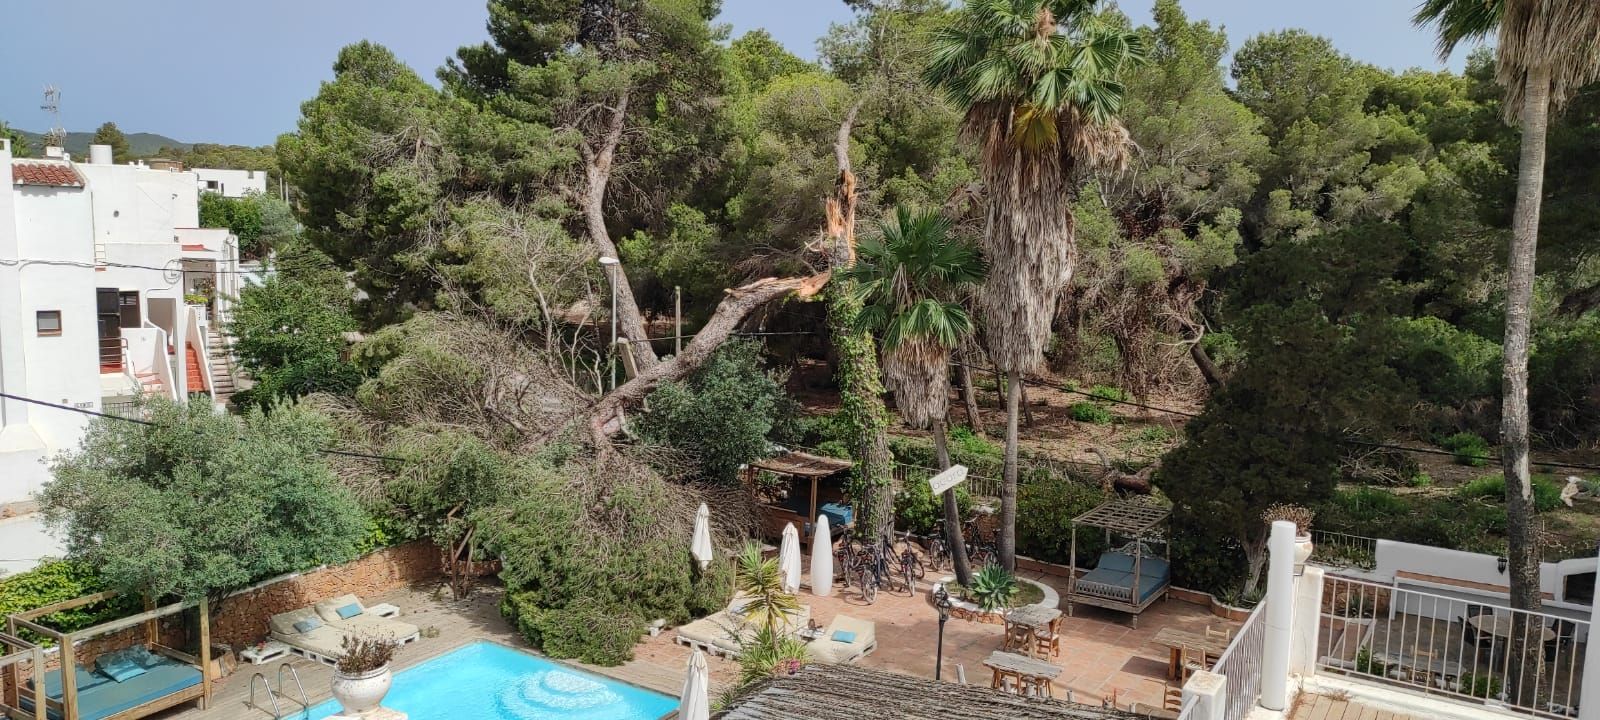 Un pino de grandes dimensiones cae sobre la piscina de un hotel de Ibiza